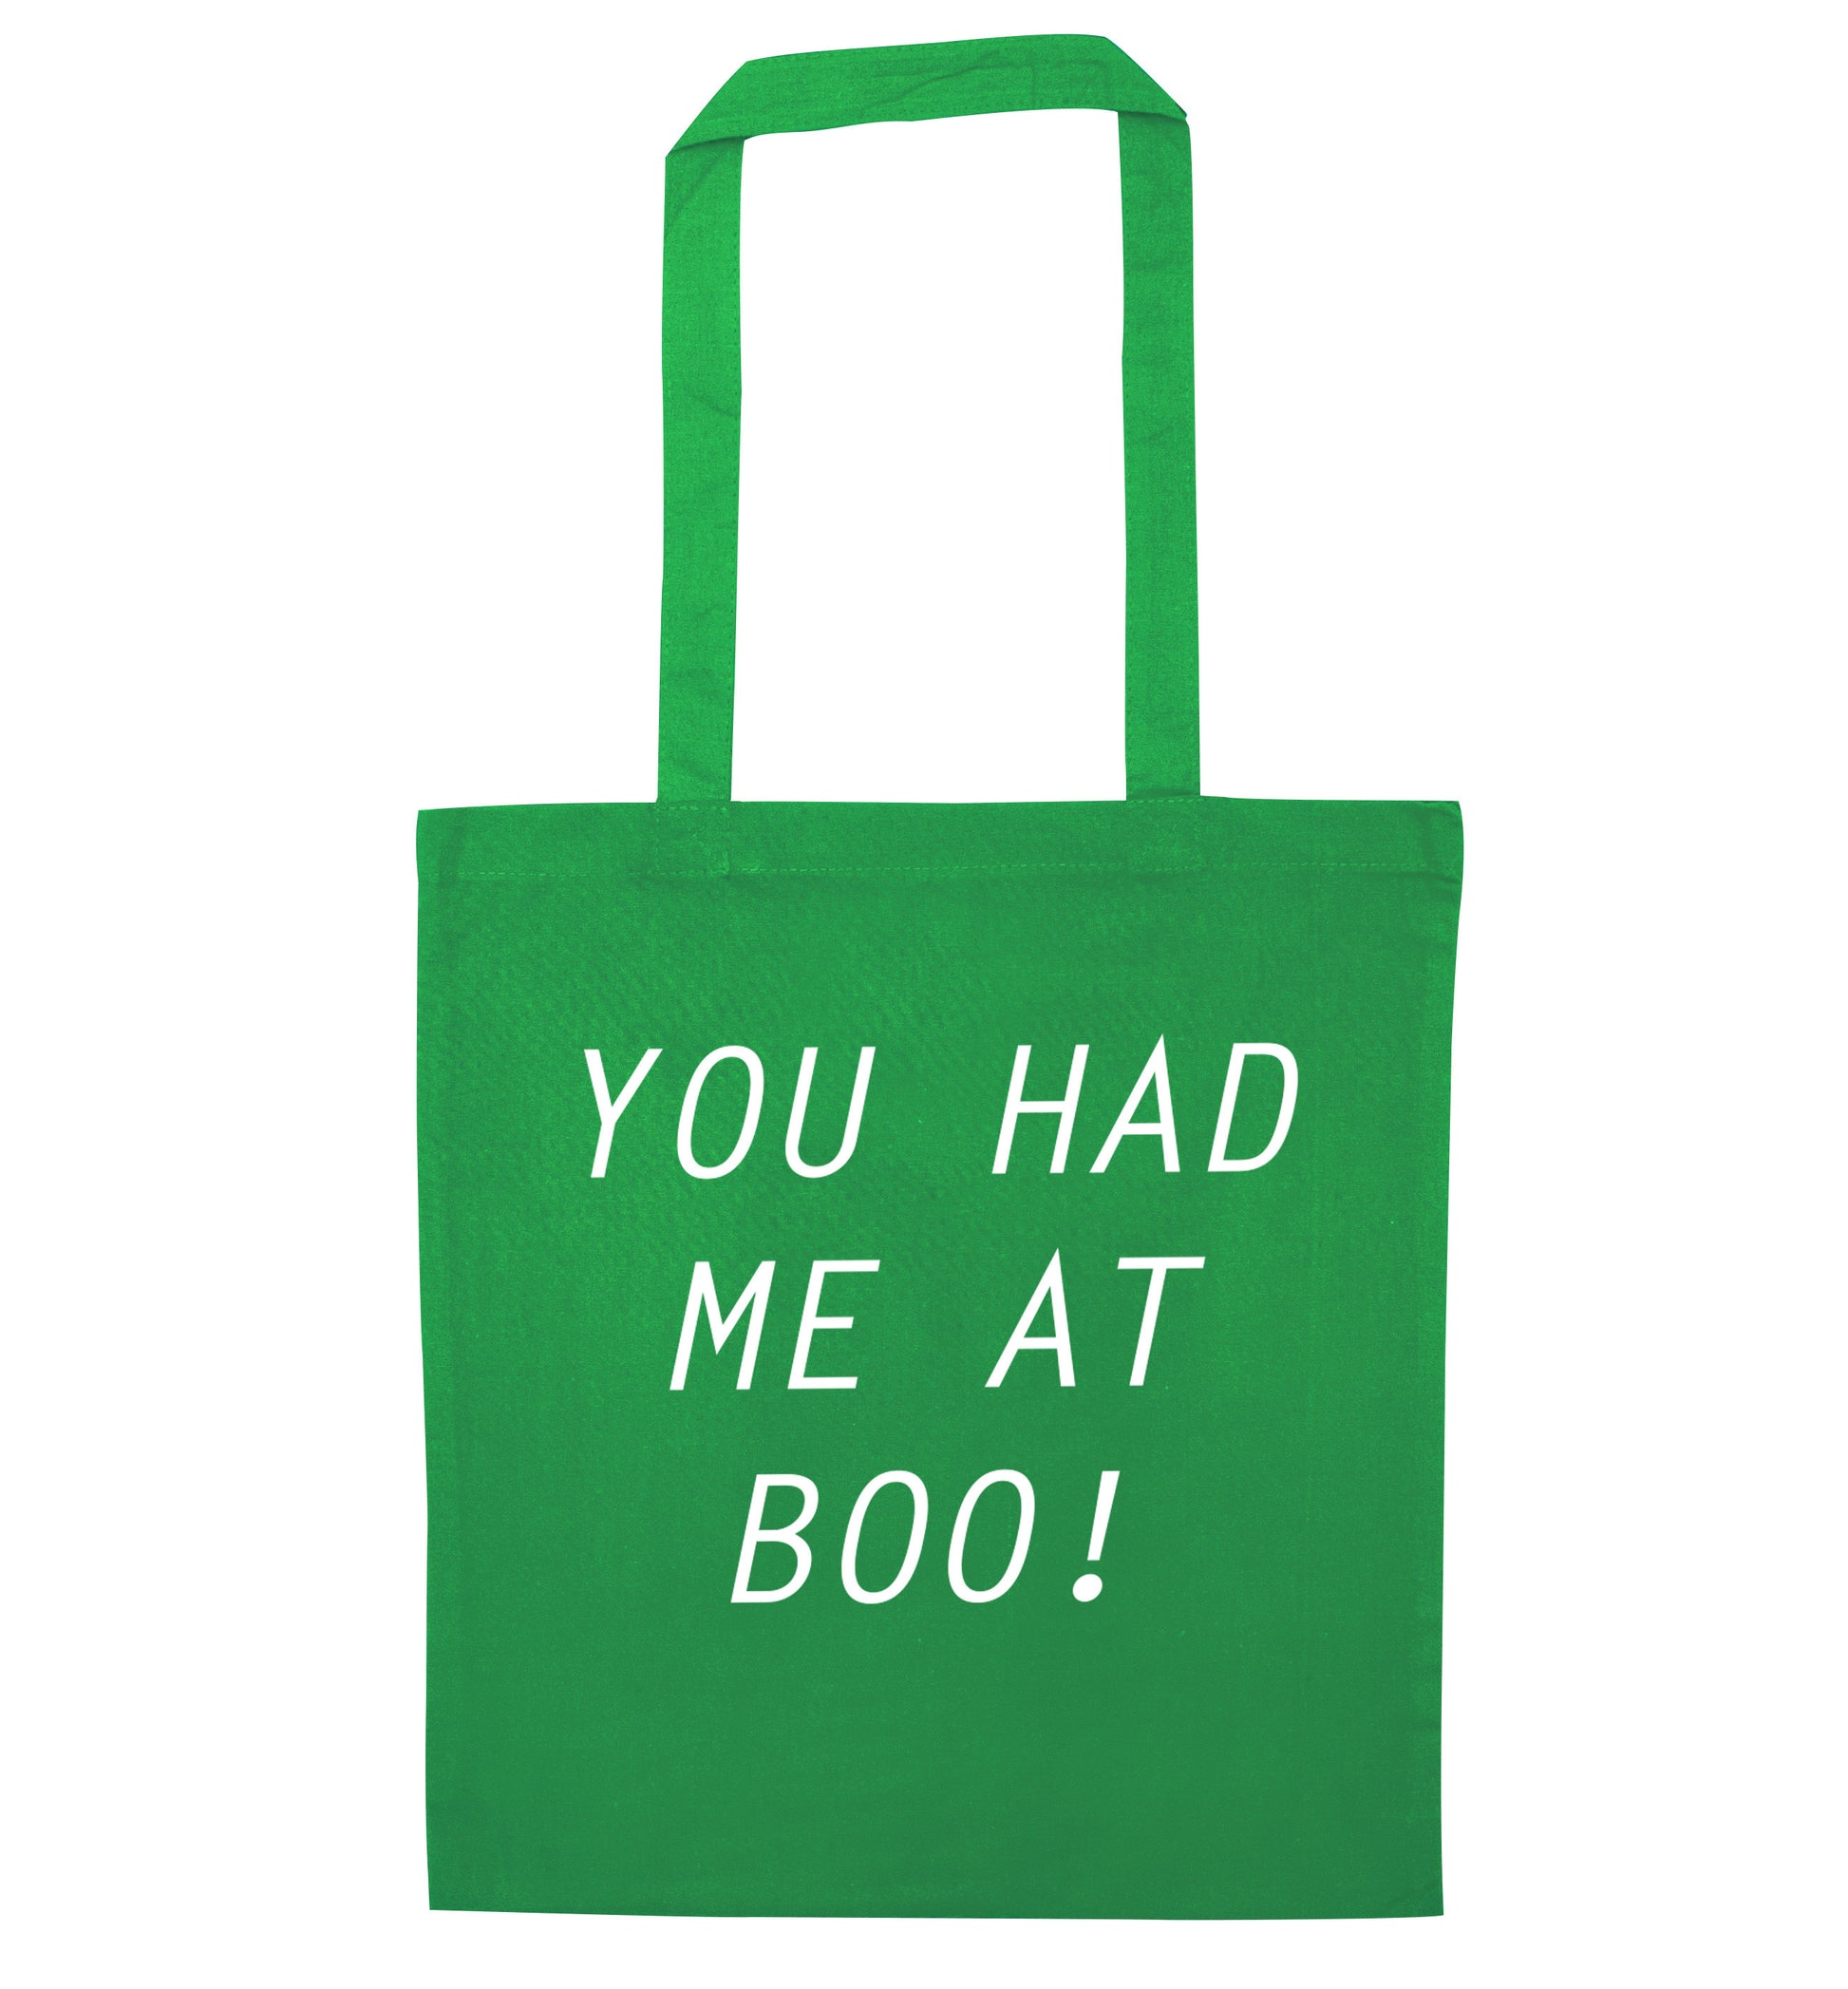 You had me at boo! green tote bag